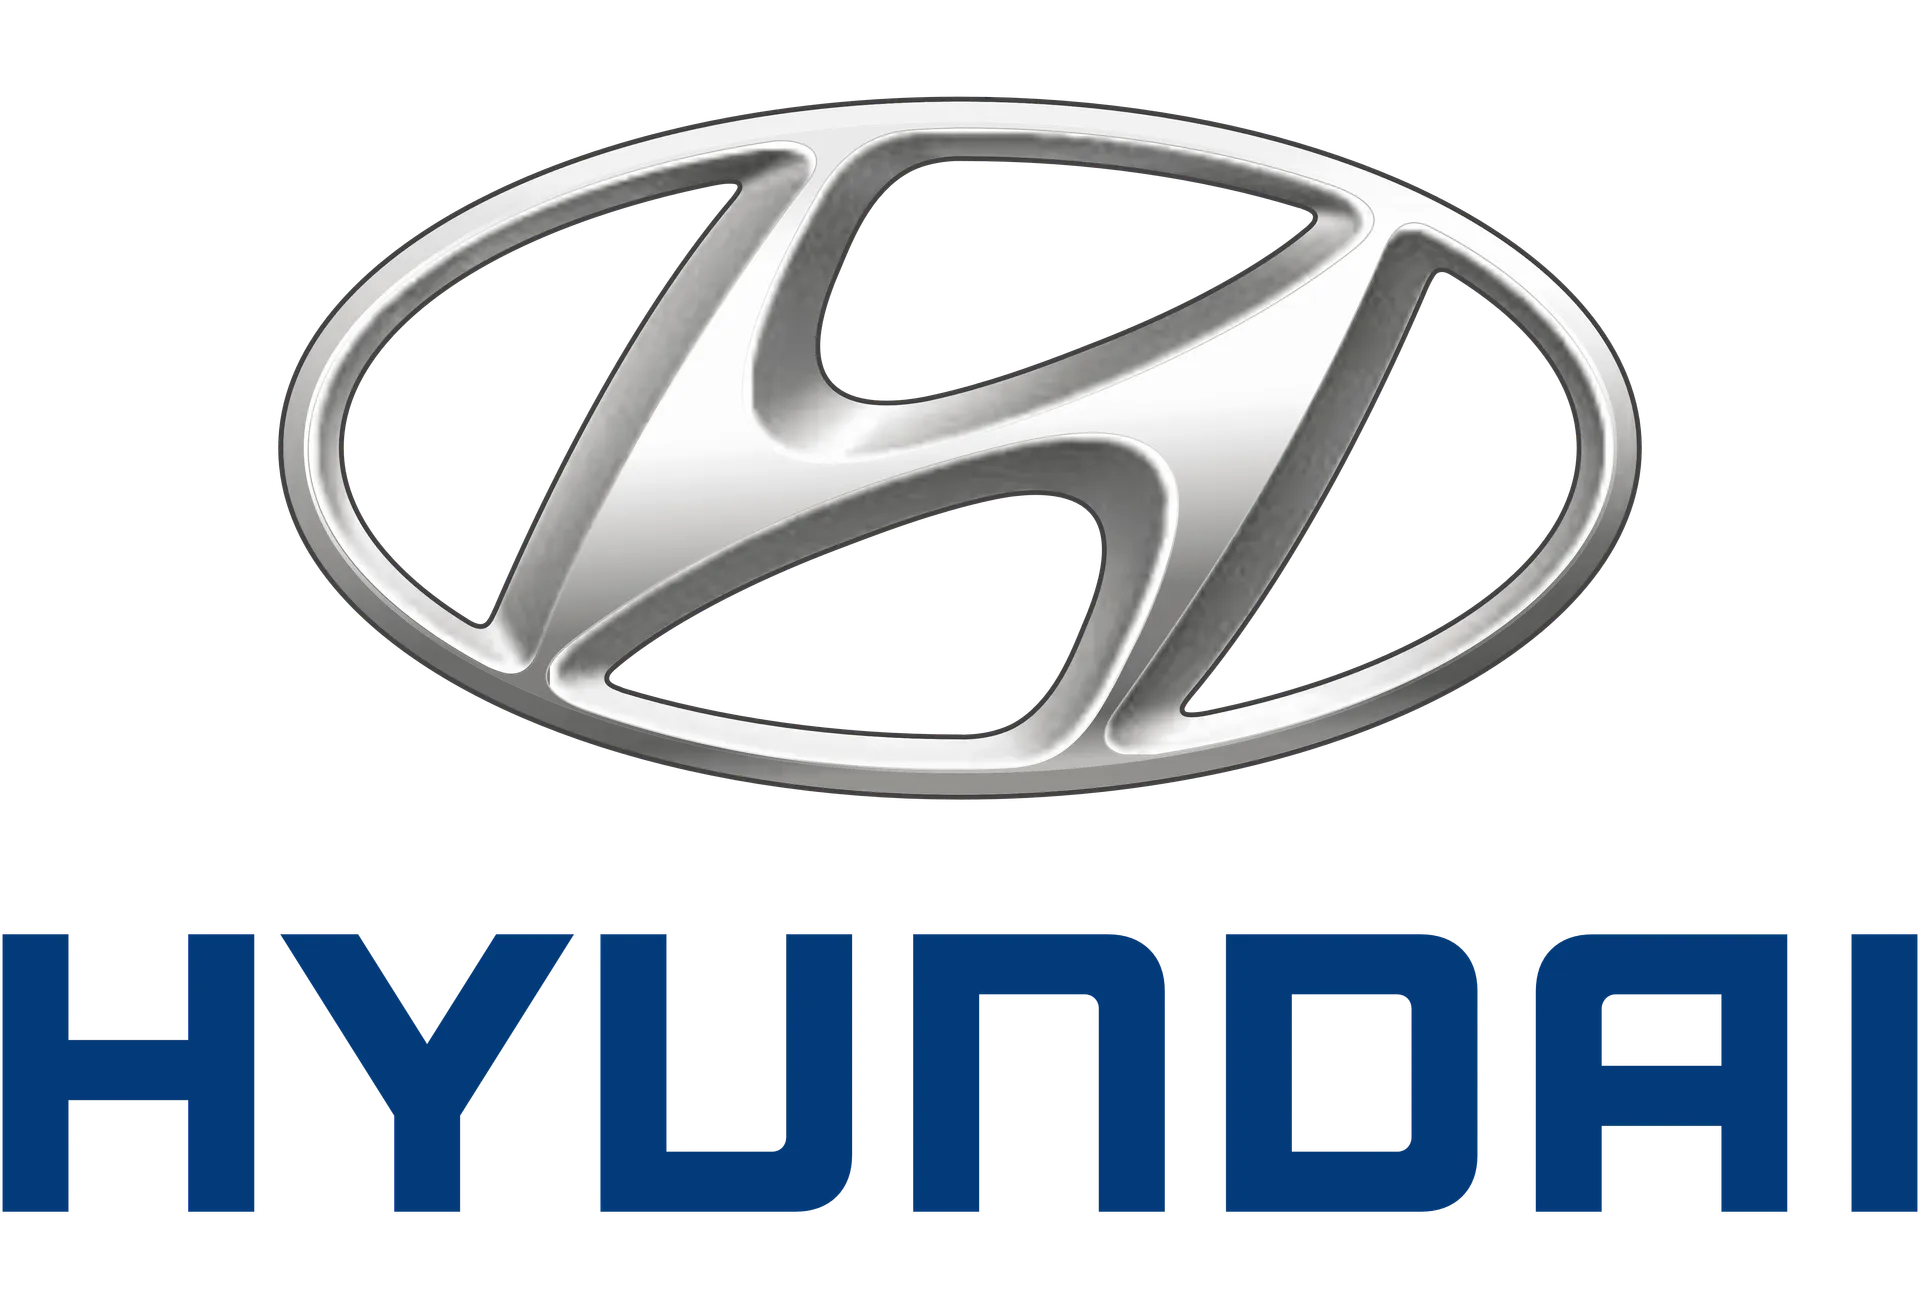 HYUNDAI logo